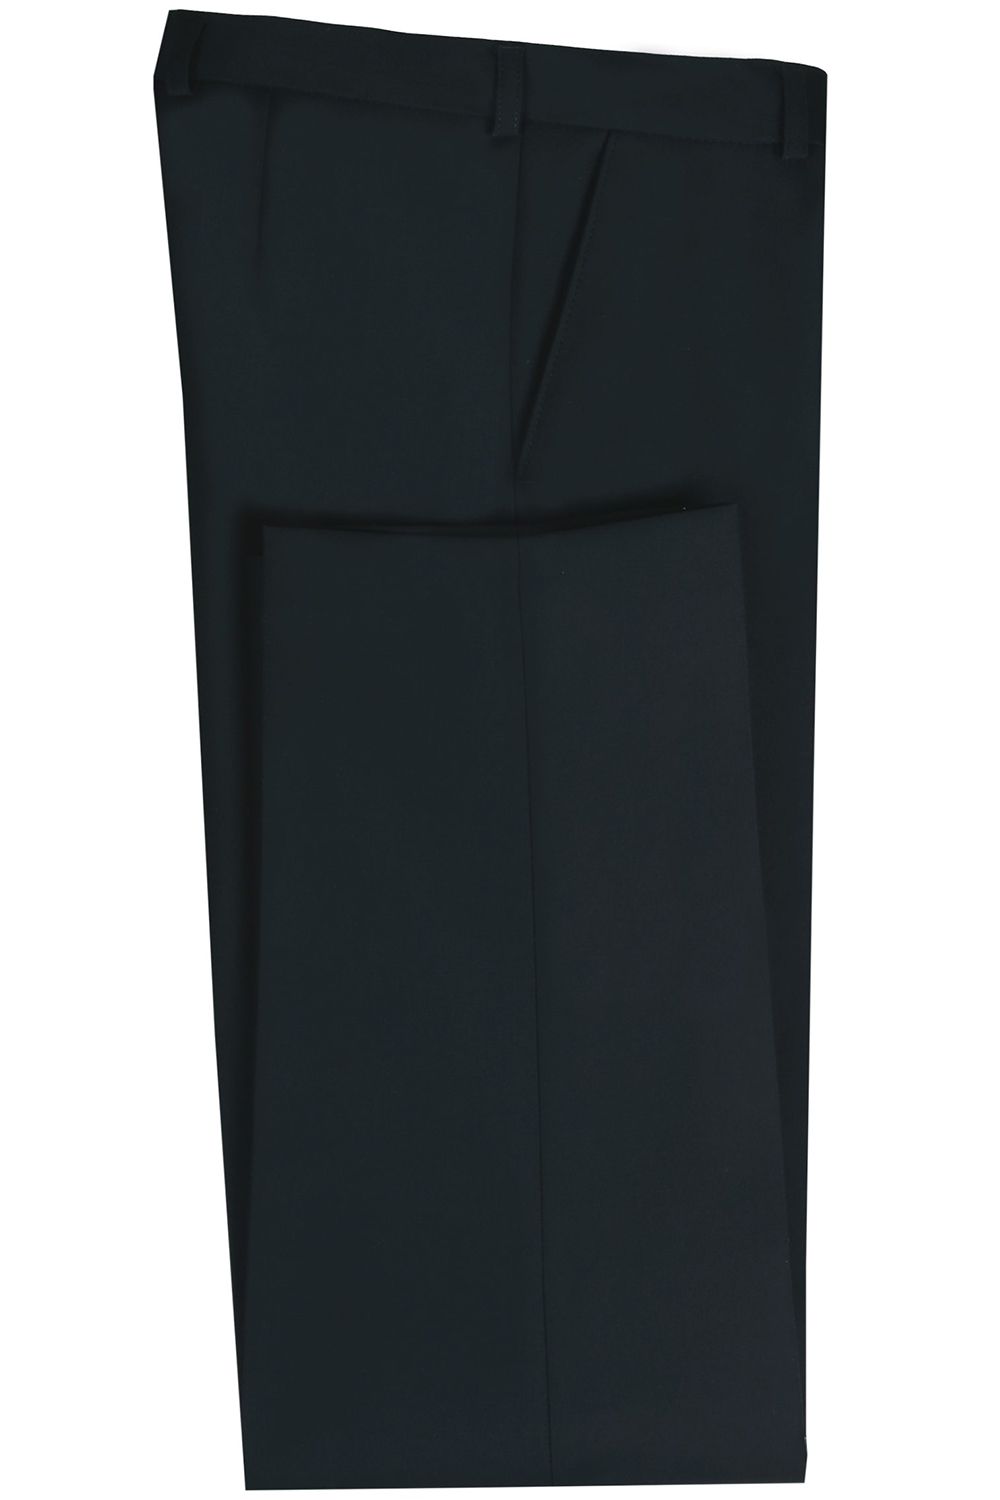 Брюки Van Cliff, размер 158 (40), цвет черный A91016 - фото 2